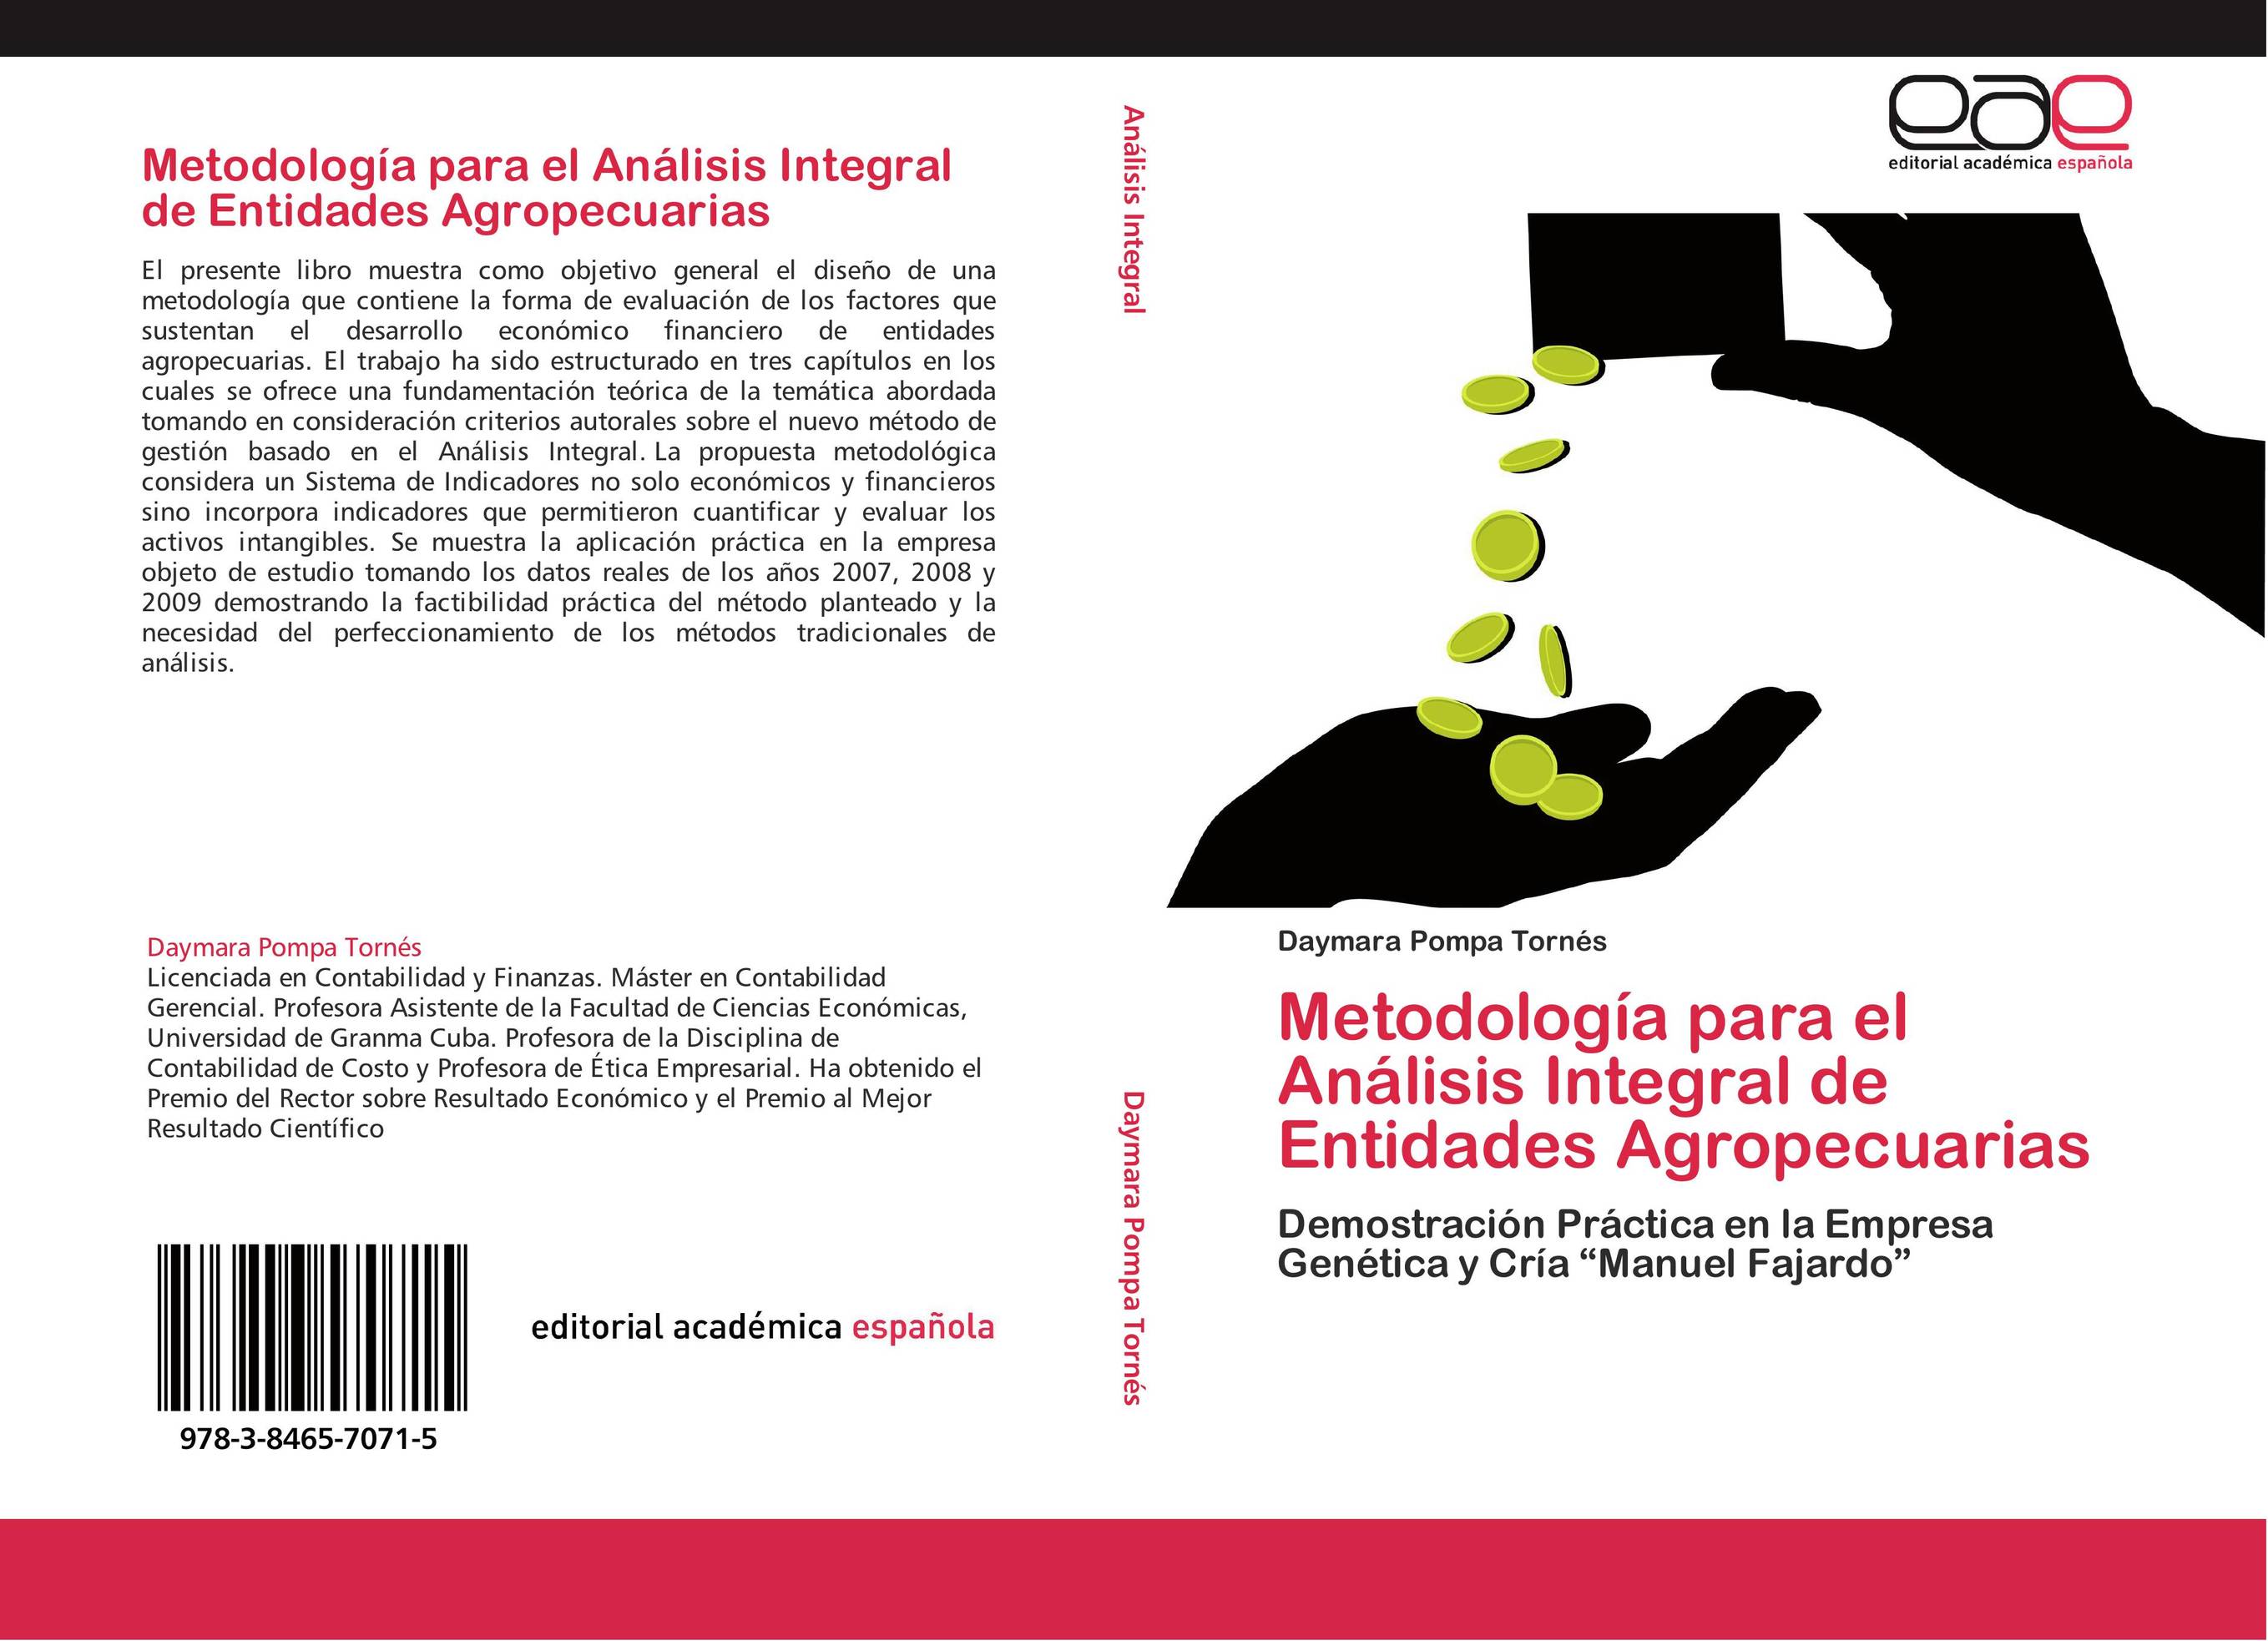 Metodología para el Análisis Integral de Entidades Agropecuarias